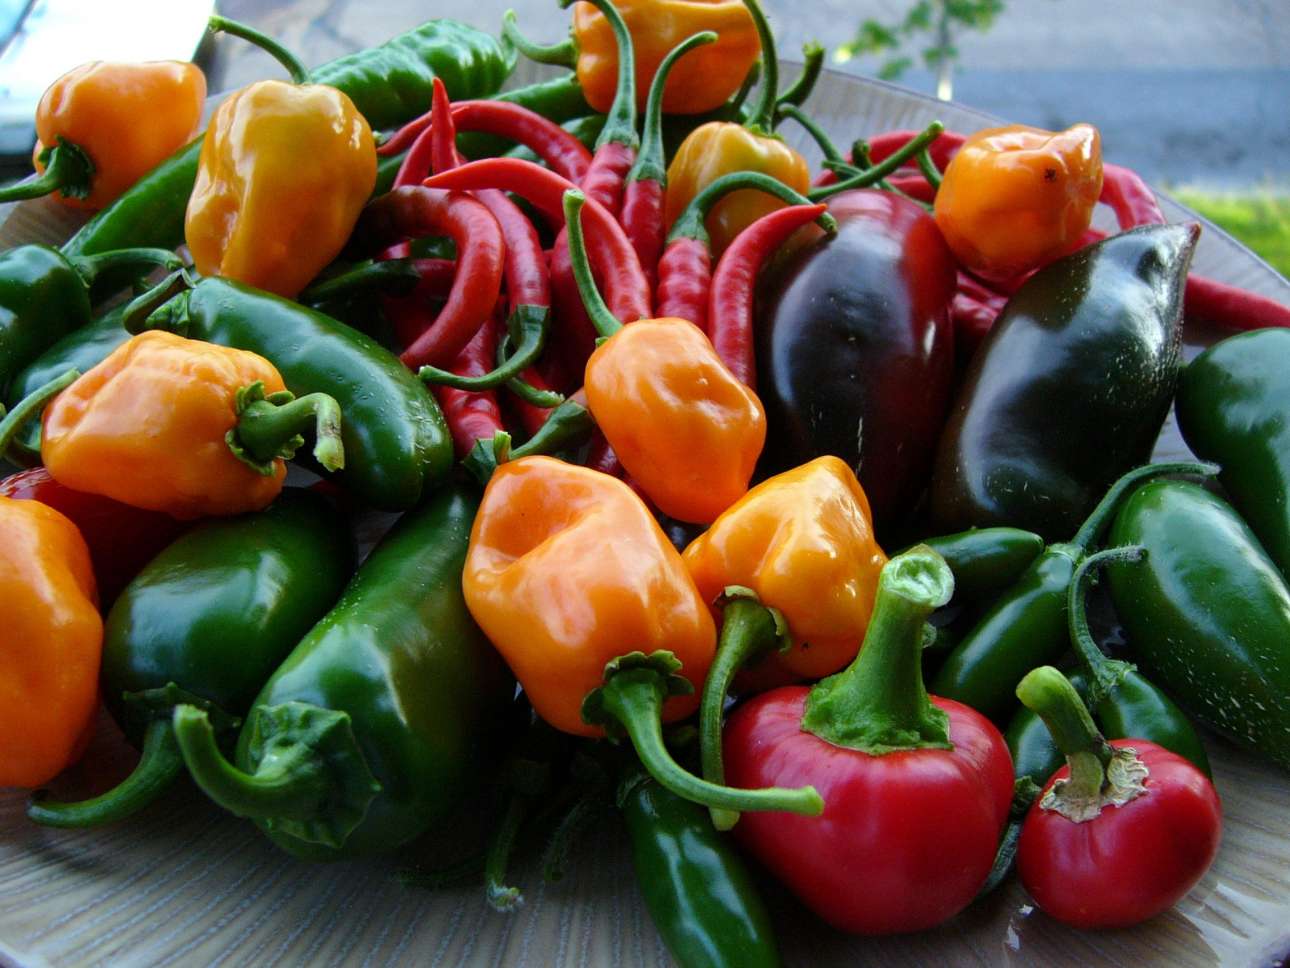 Much pepper. Контраст зеленые овощи и красный перец. Красный перец 106. Pepper вото. Cowhorn long (острый перец бычий Рог длинный).